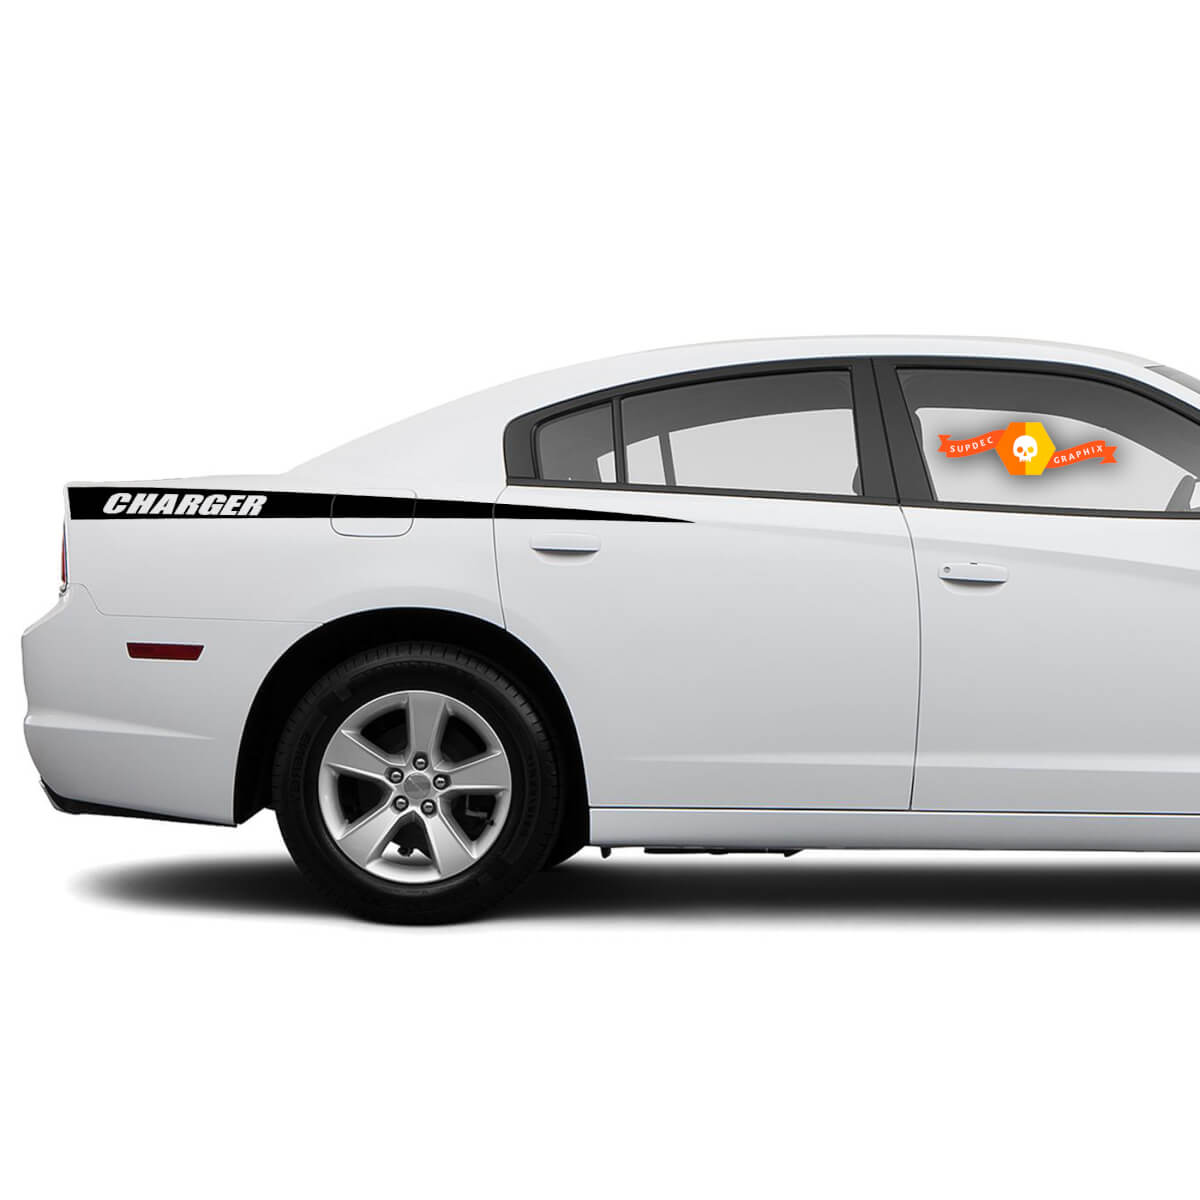 Dodge Charger Decal Sticker Seitengrafiken passen zu den Modellen 2011-2014